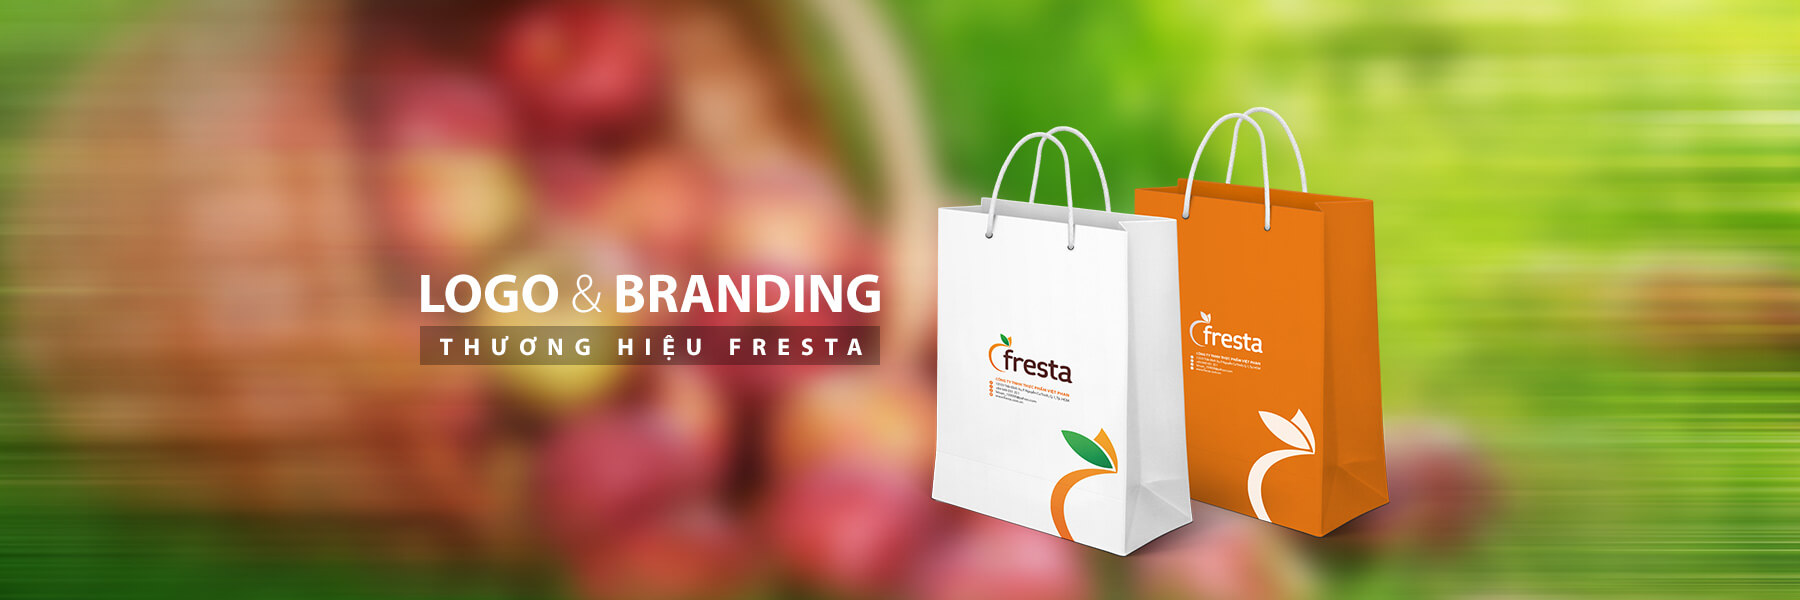 Đặt tên thiết kế logo cip thương hiệu trái cây fresta